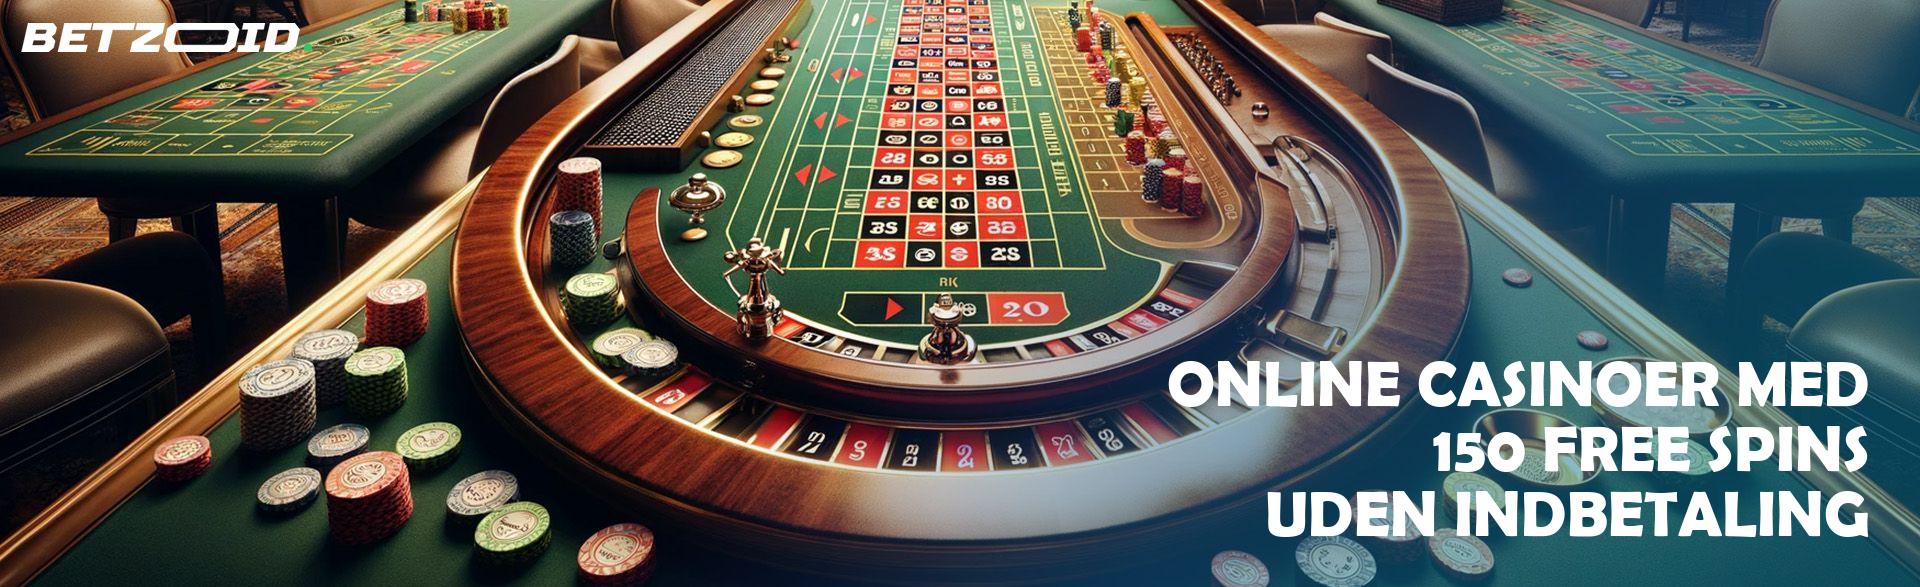 Online Casinoer med 150 Free Spins uden Indbetaling.